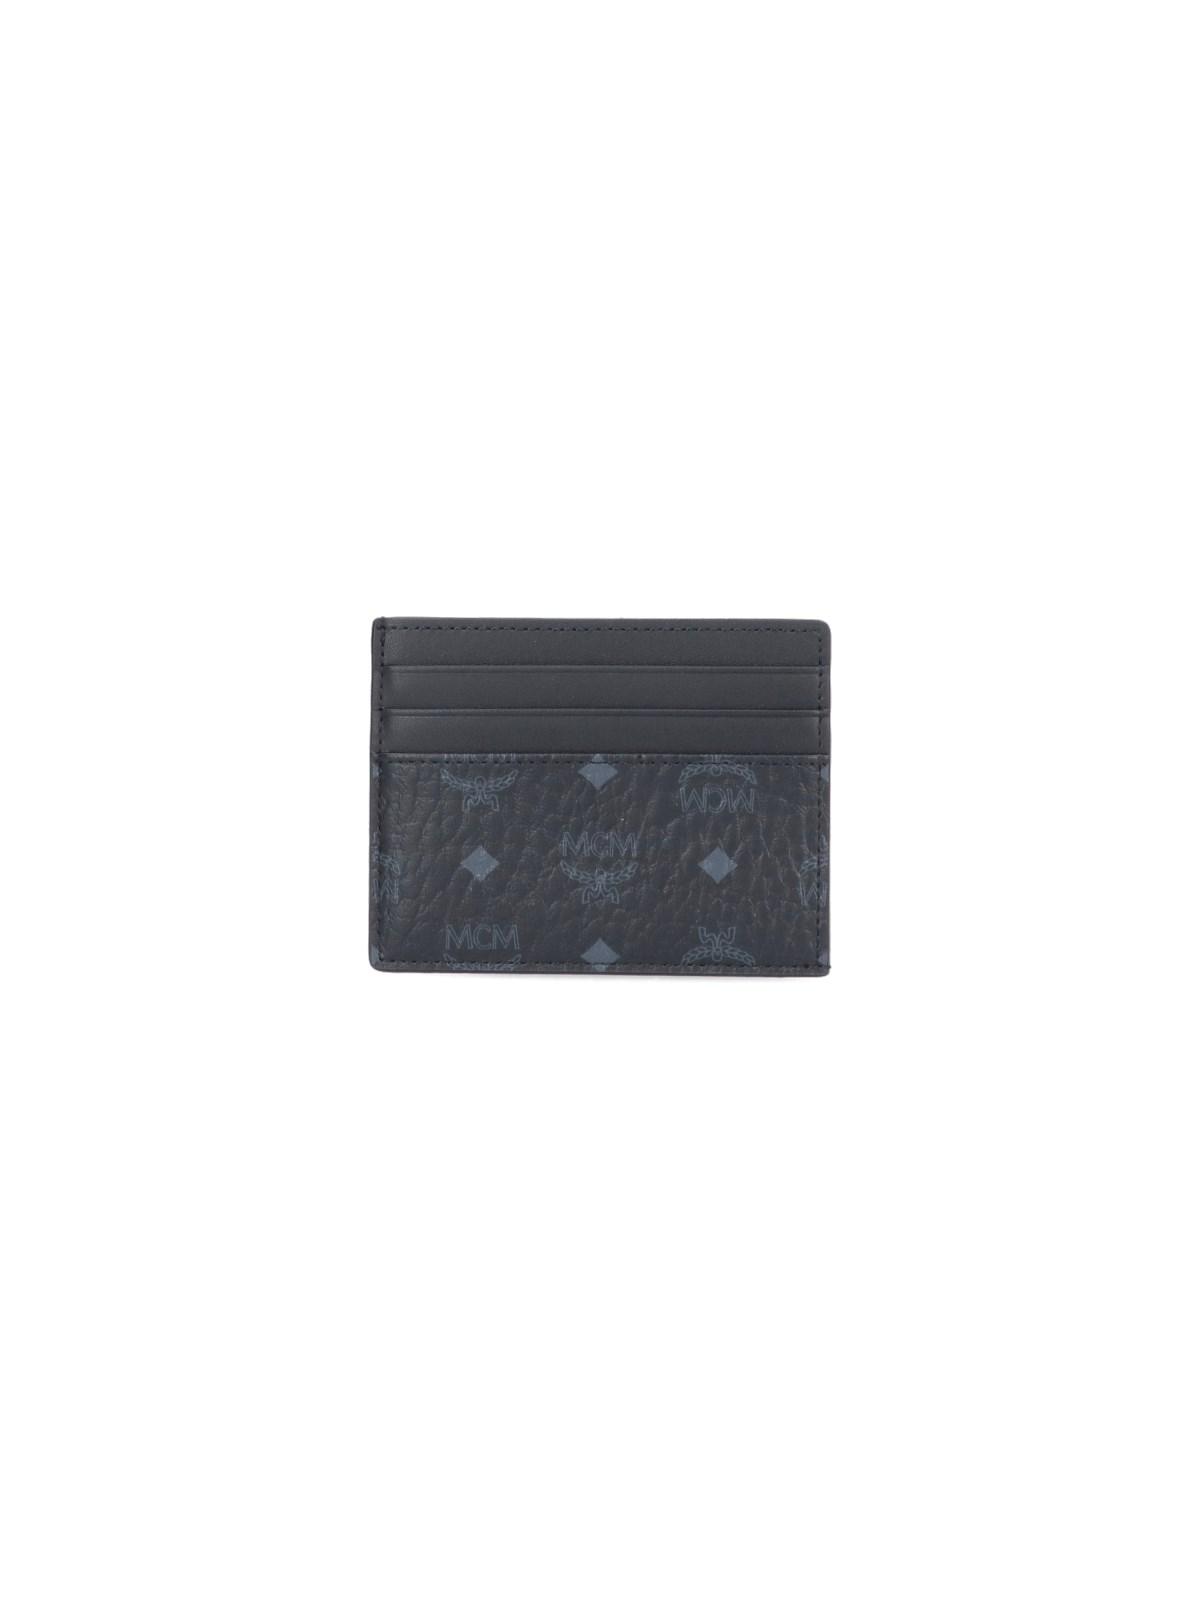 One Size Lanyard Card Holder in Visetos Black